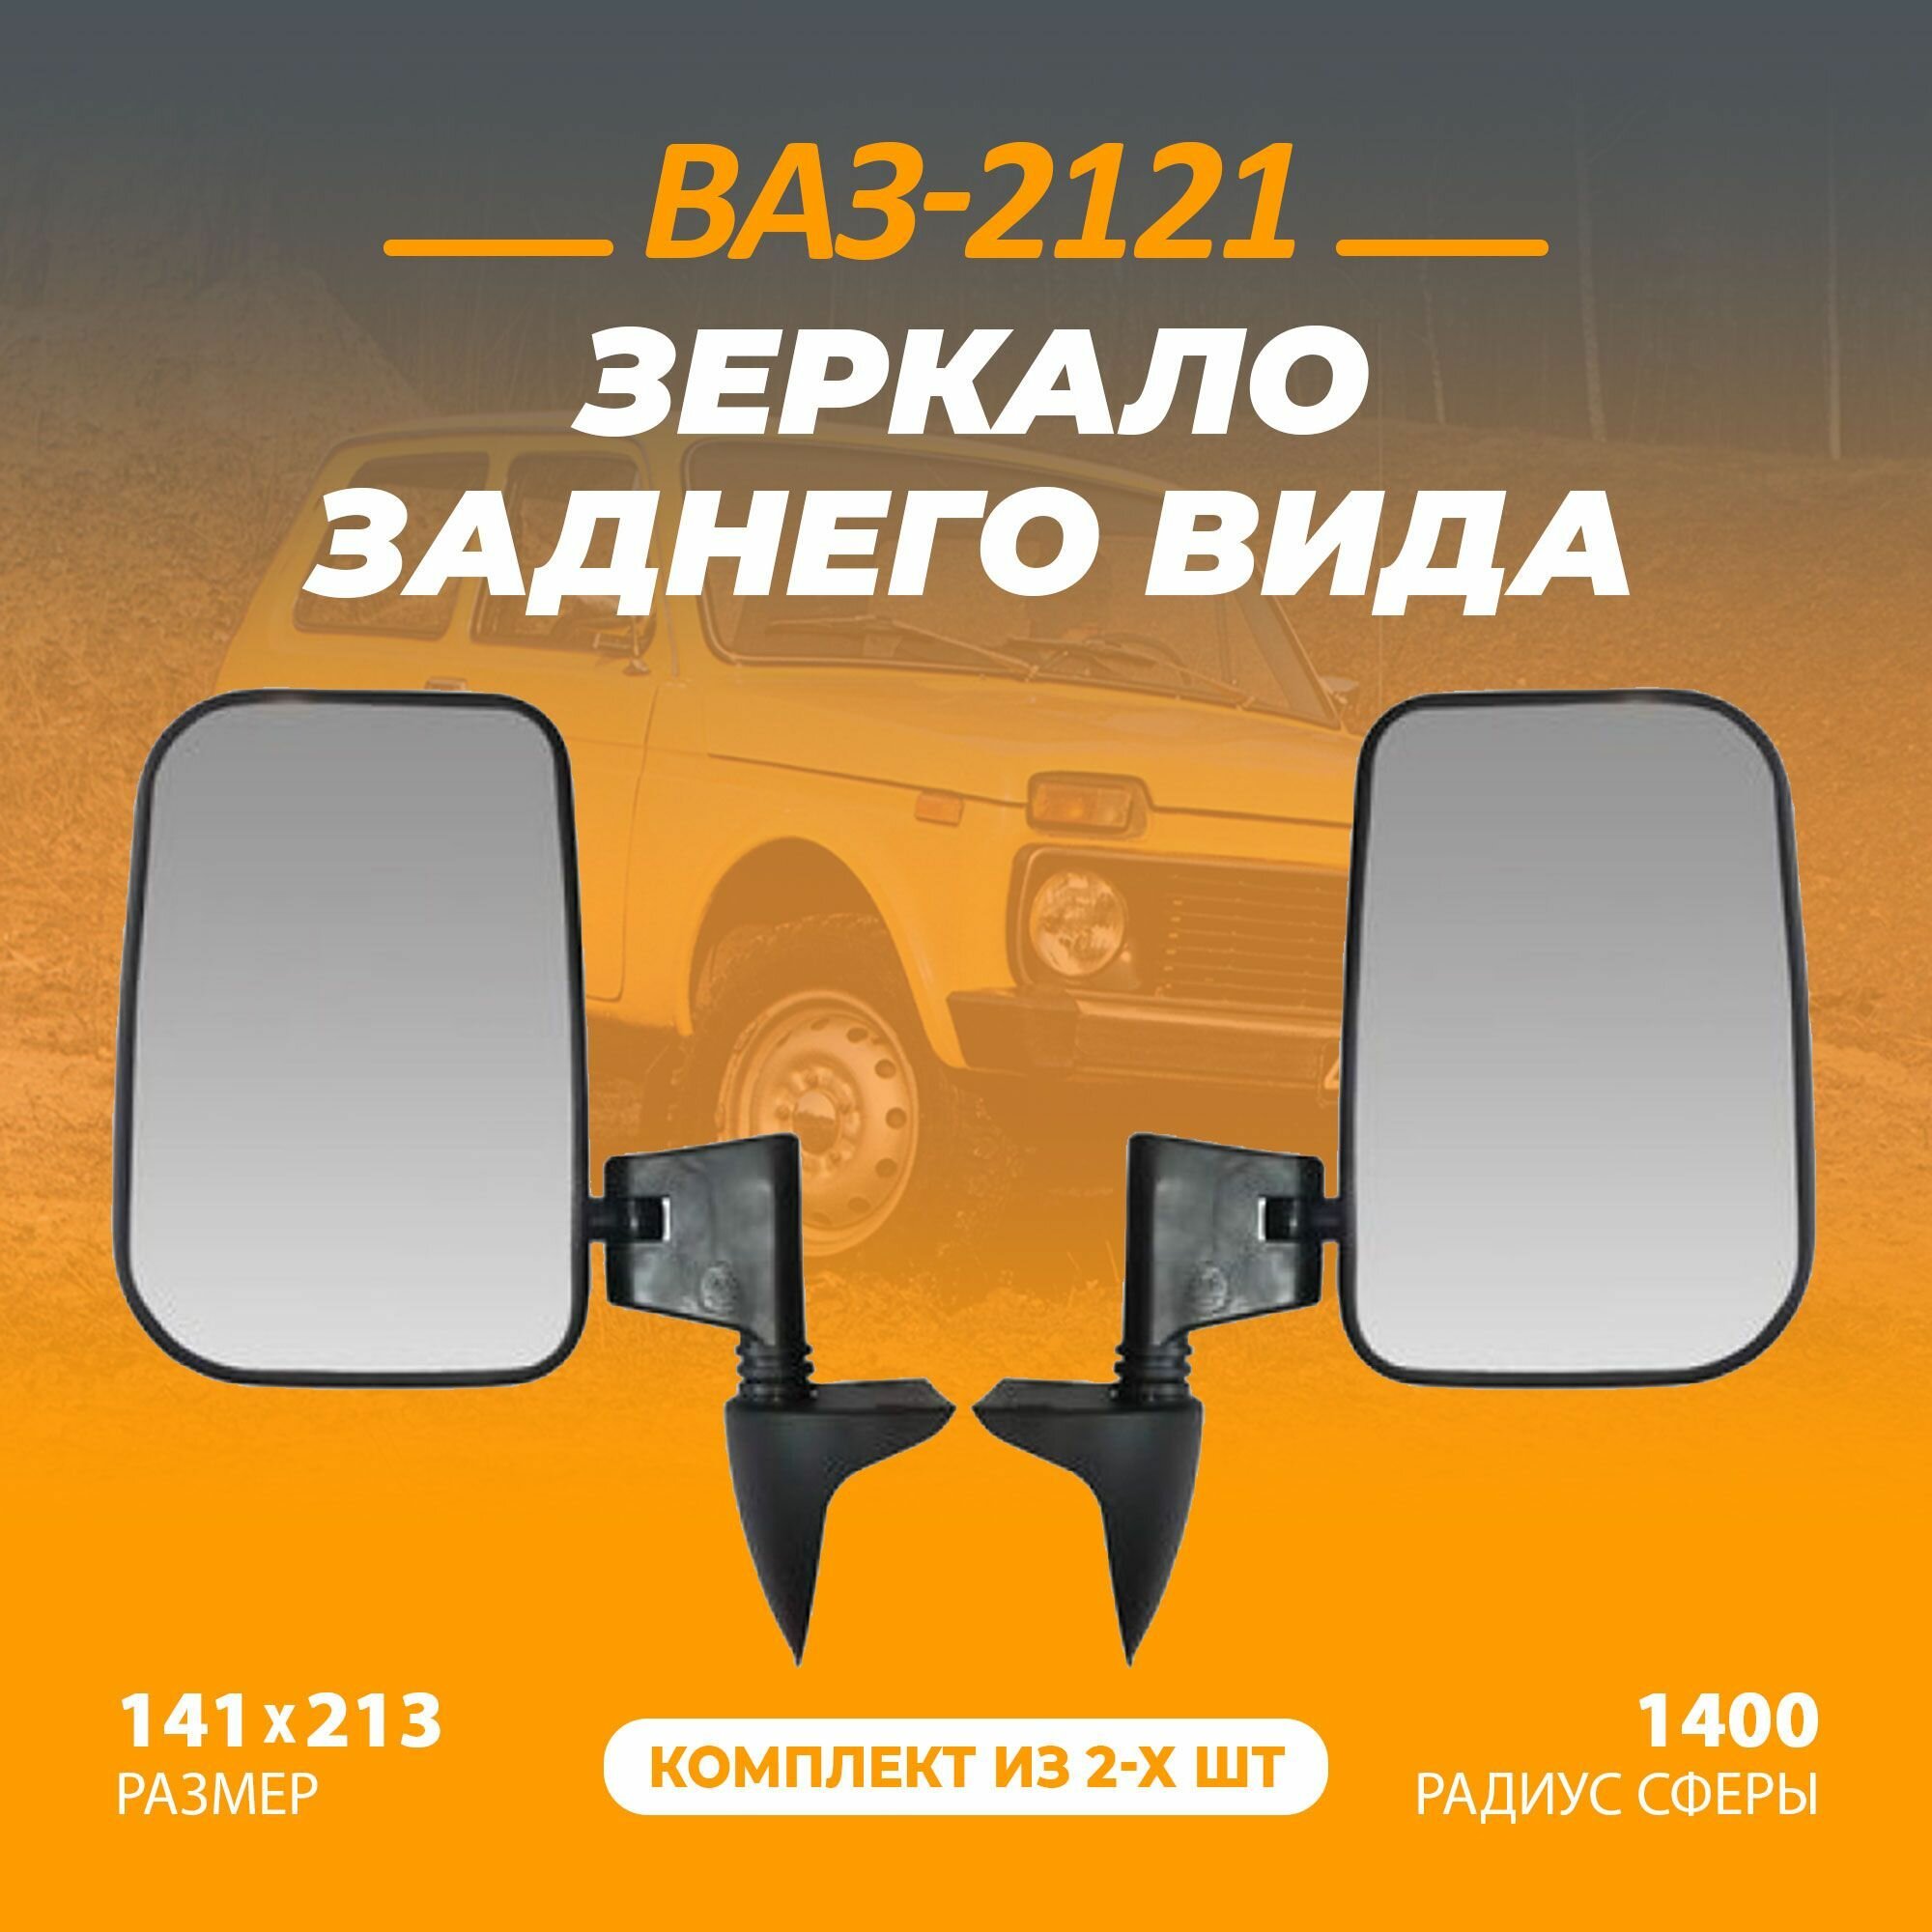 Зеркало заднего вида для автомобиля ВАЗ-2121 Нива повышенной обзорности